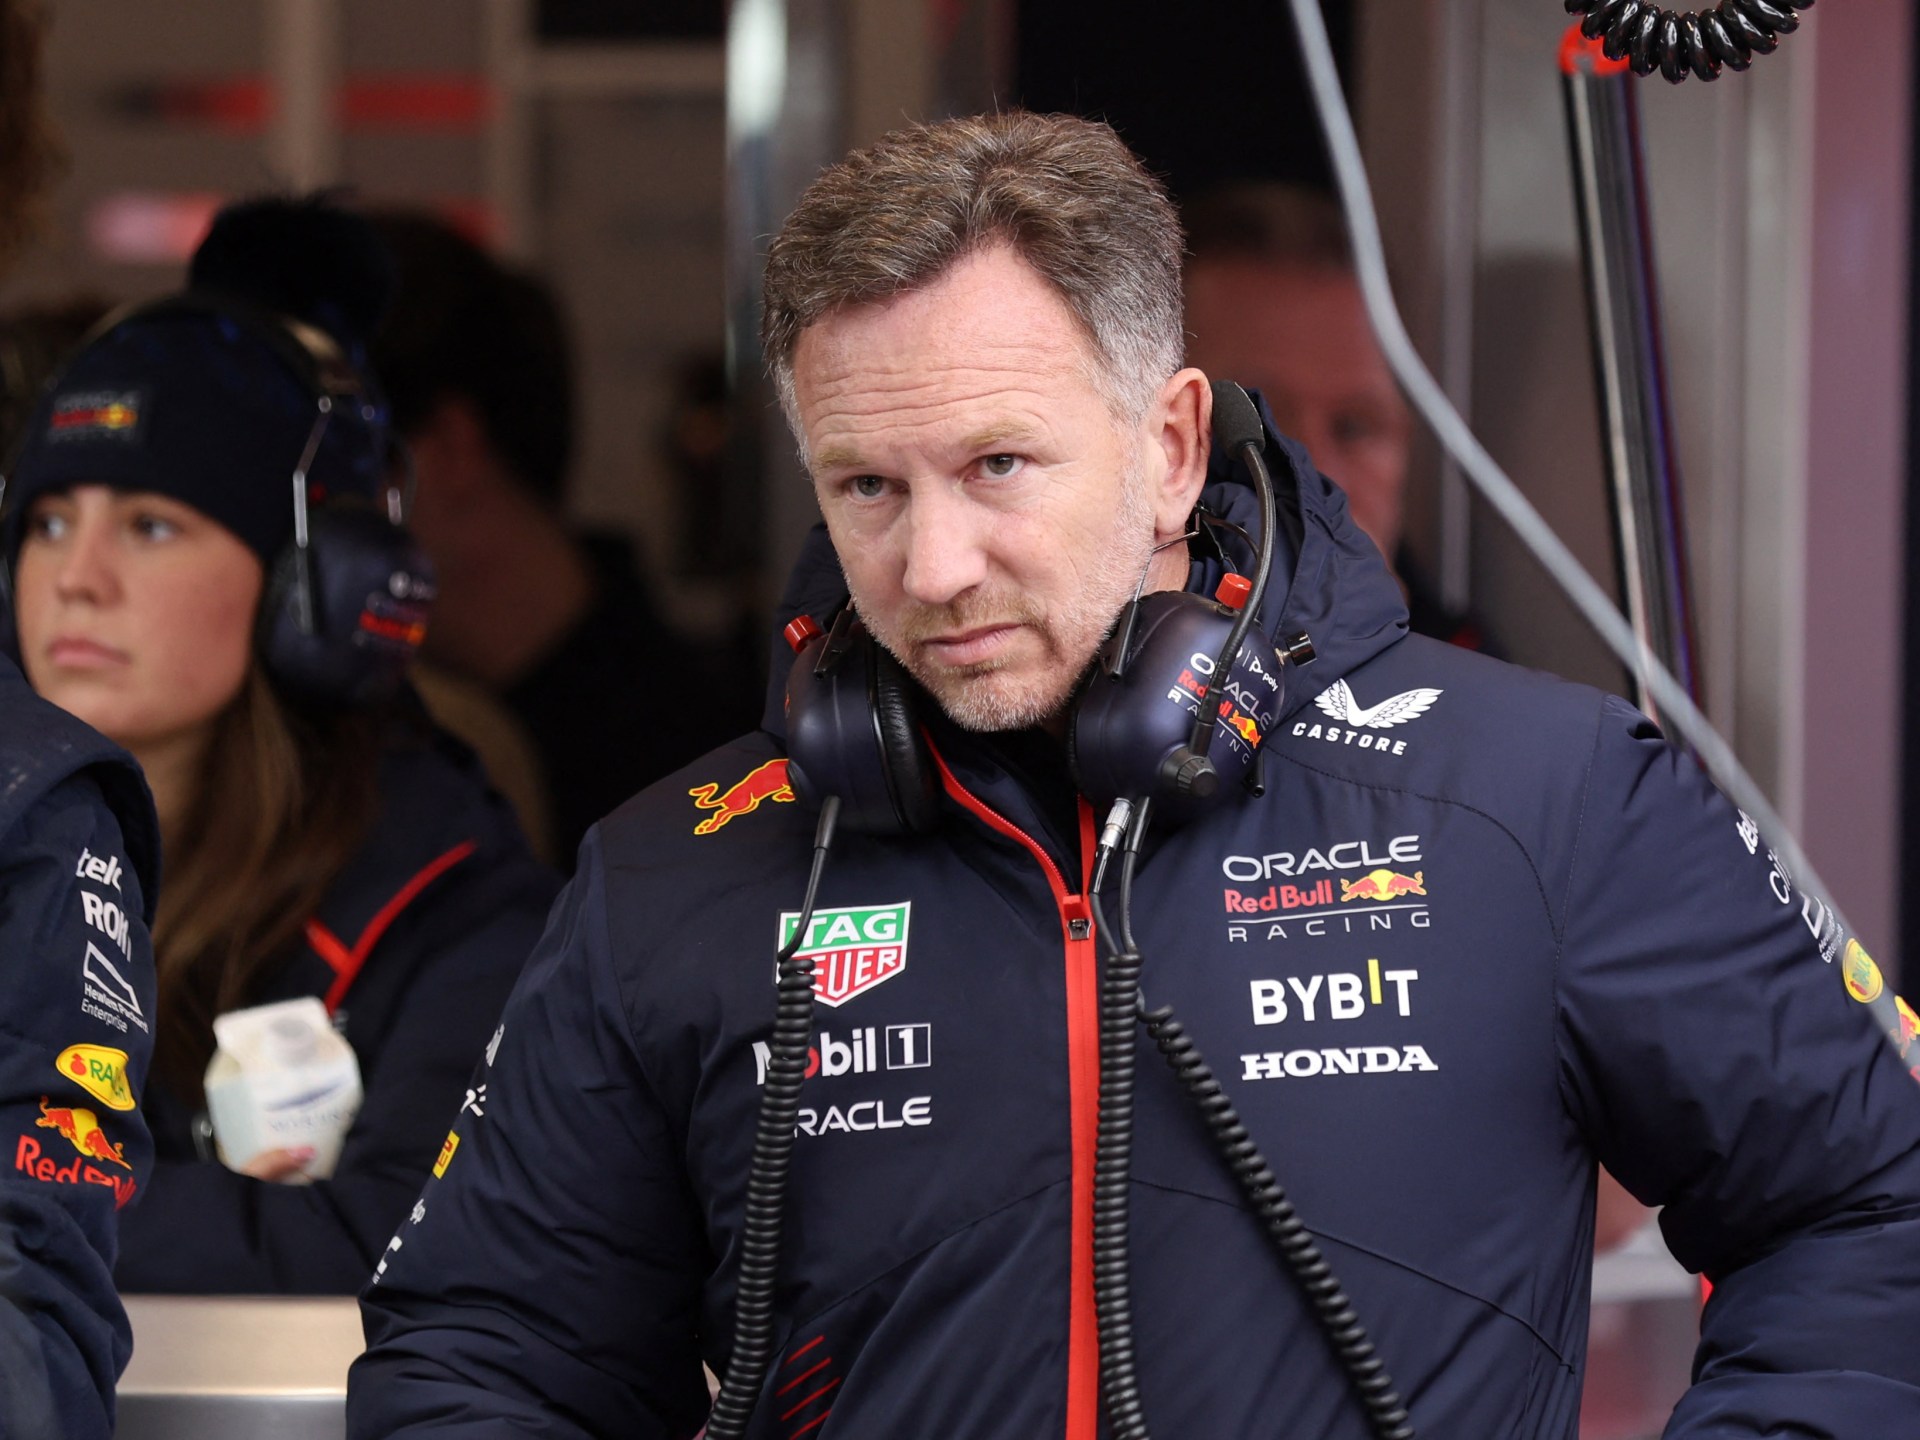 Red Bull investigate allegations against F1 team boss Christian Horner | Motorsports News